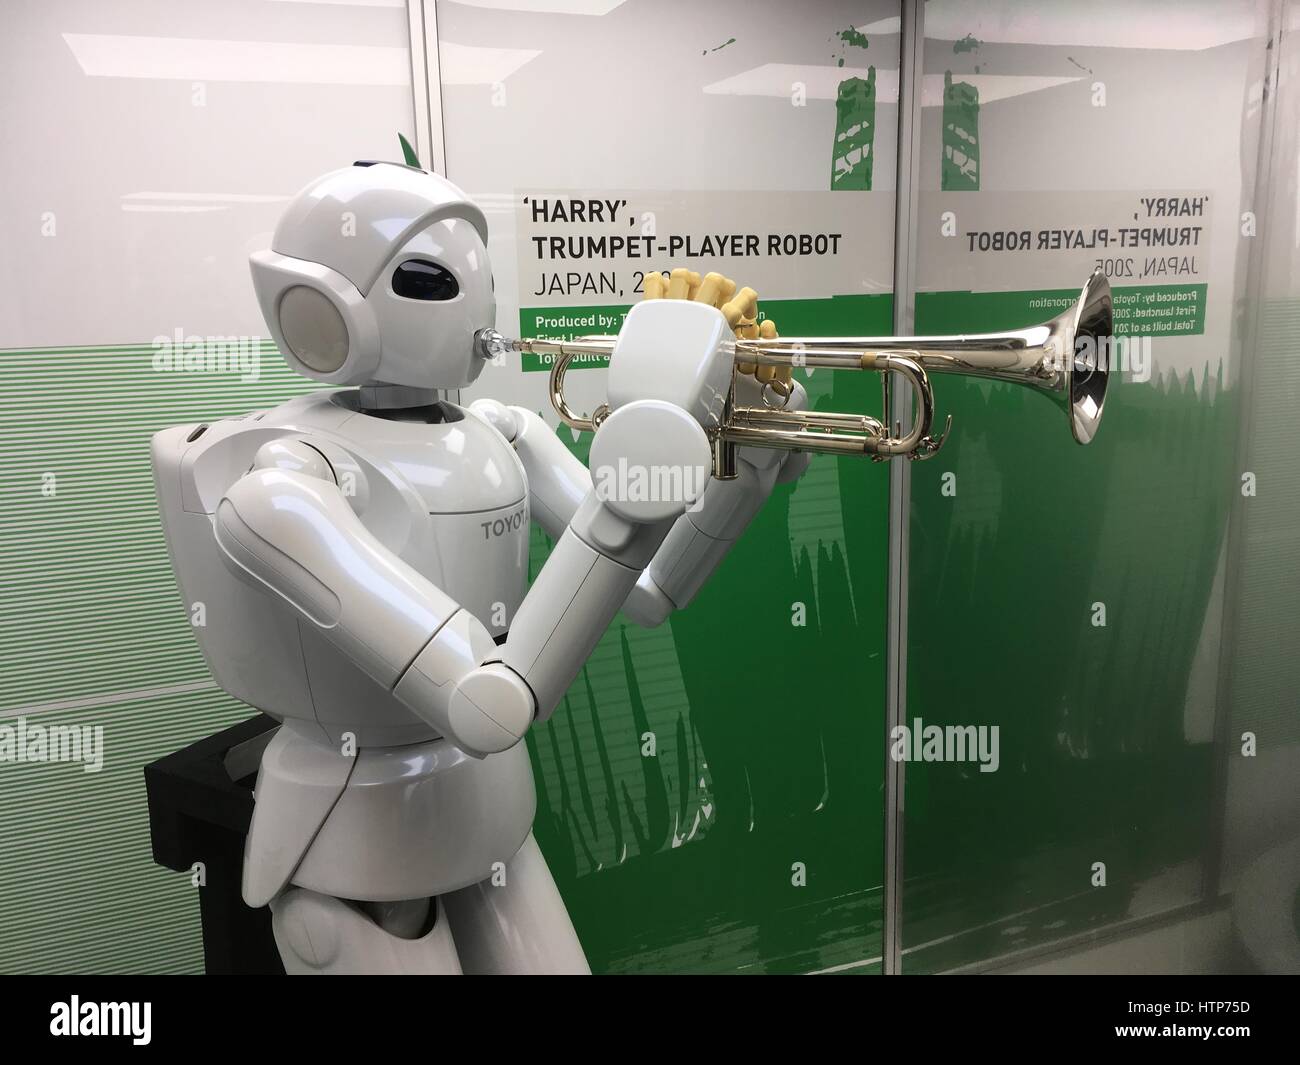 Londres, Royaume-Uni. 14Th Mar, 2017. Un robot à la trompette, l'un des objets exposés dans l'exposition spéciale au Science Museum de Londres à la découverte des 500 ans Histoire de robots humanoïdes. Crédit : John Eveson/Alamy Live News Banque D'Images